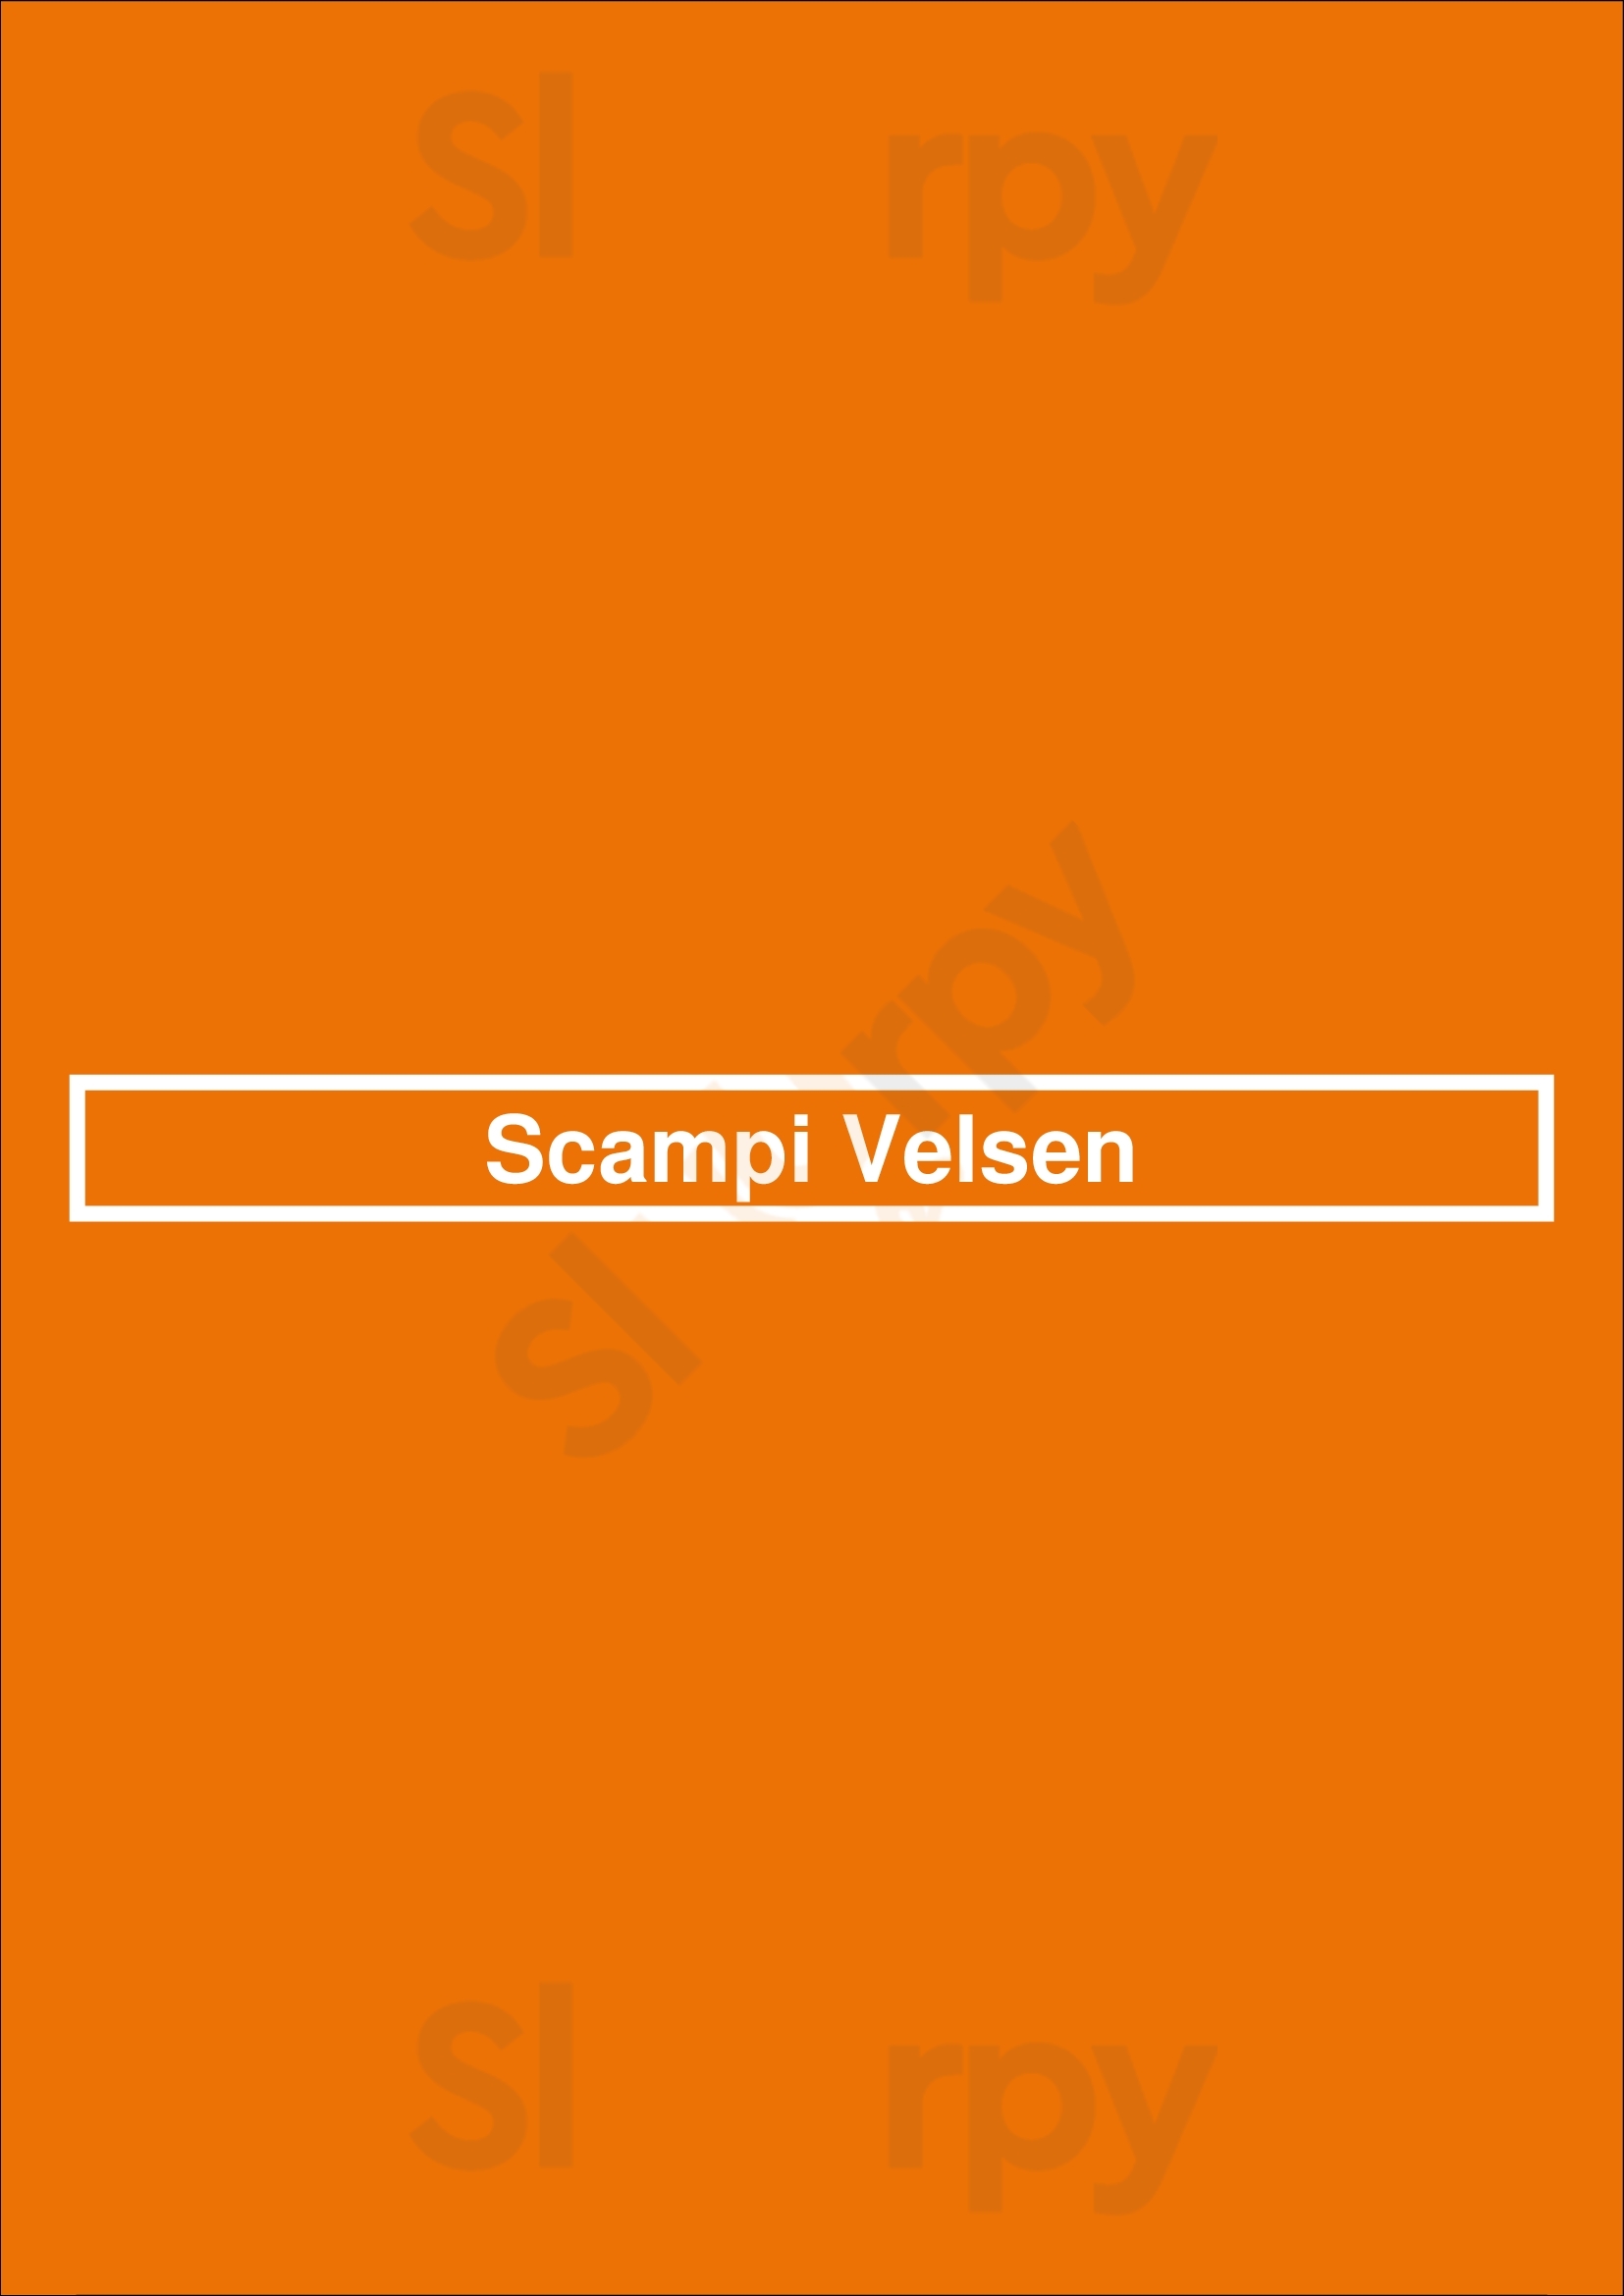 Scampi Velsen Velsen-Noord Menu - 1